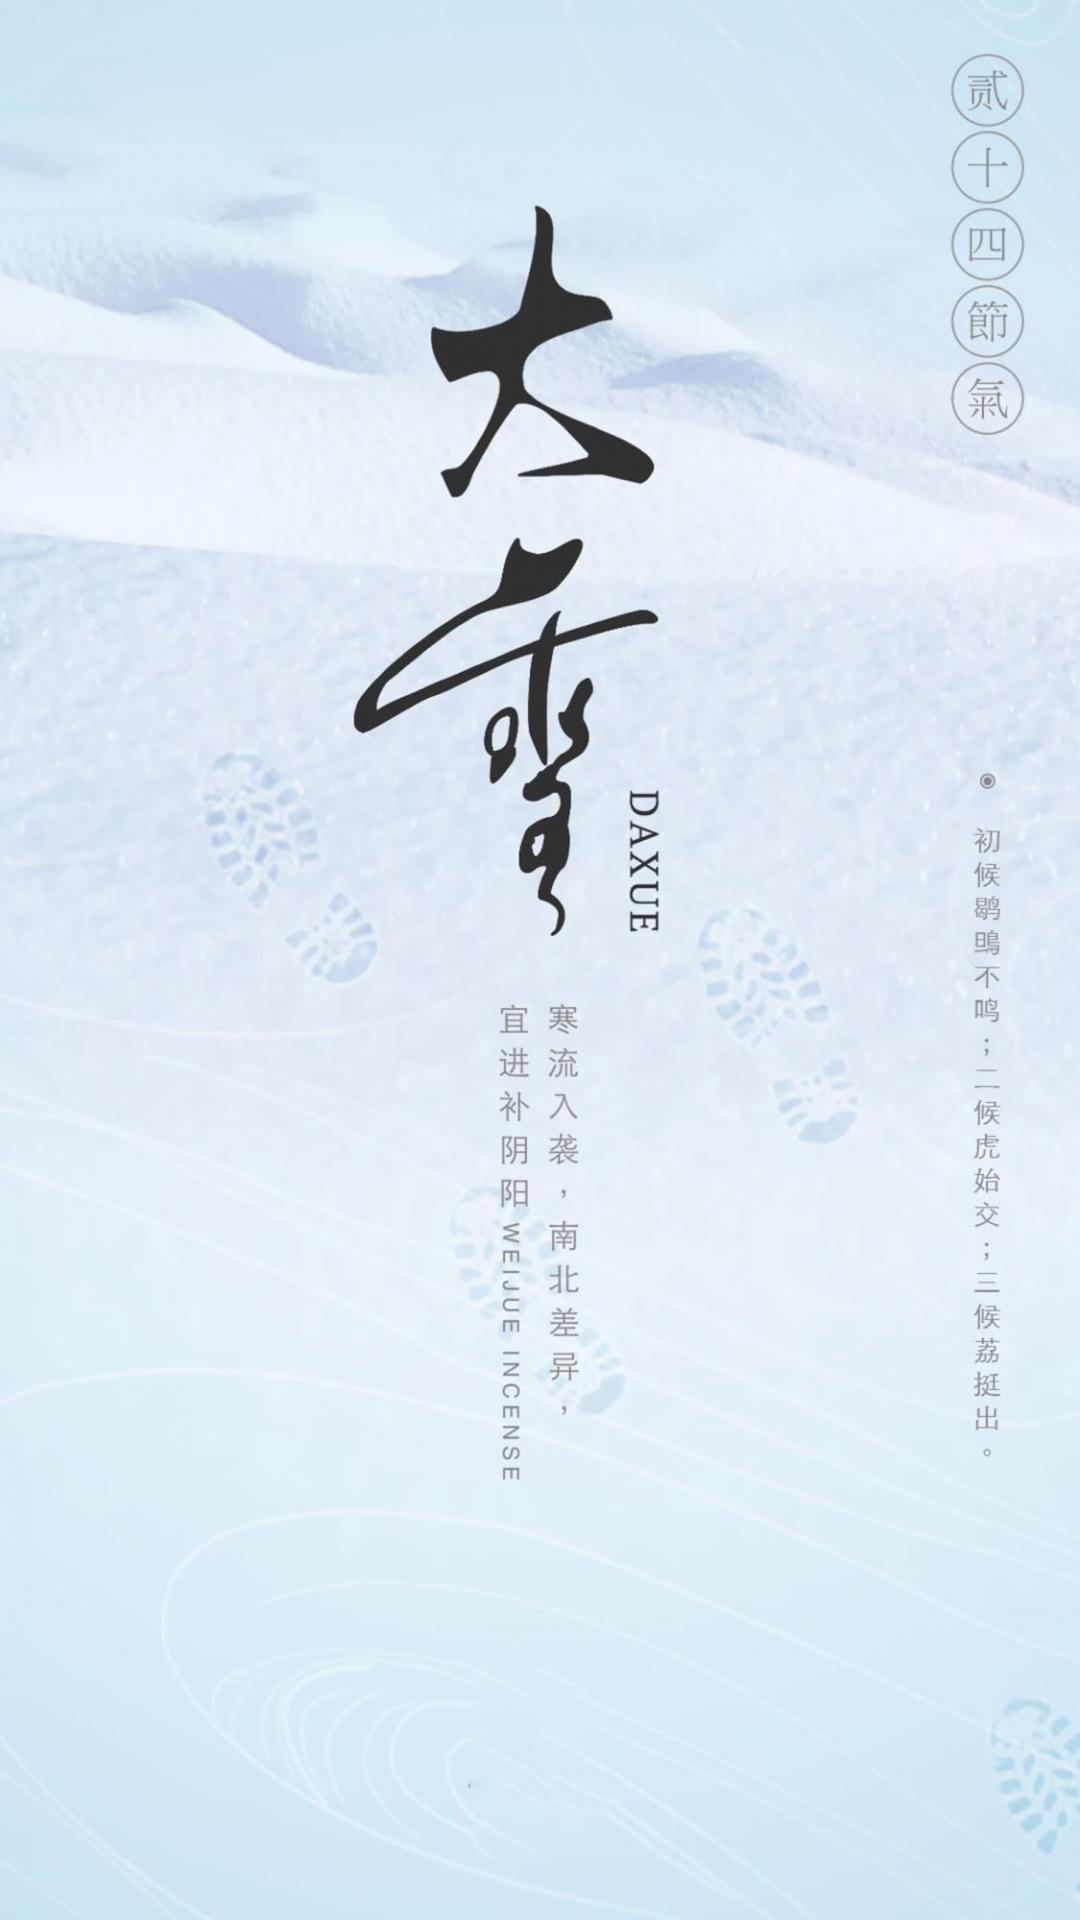 传统节气大雪之雪景图片手机壁纸